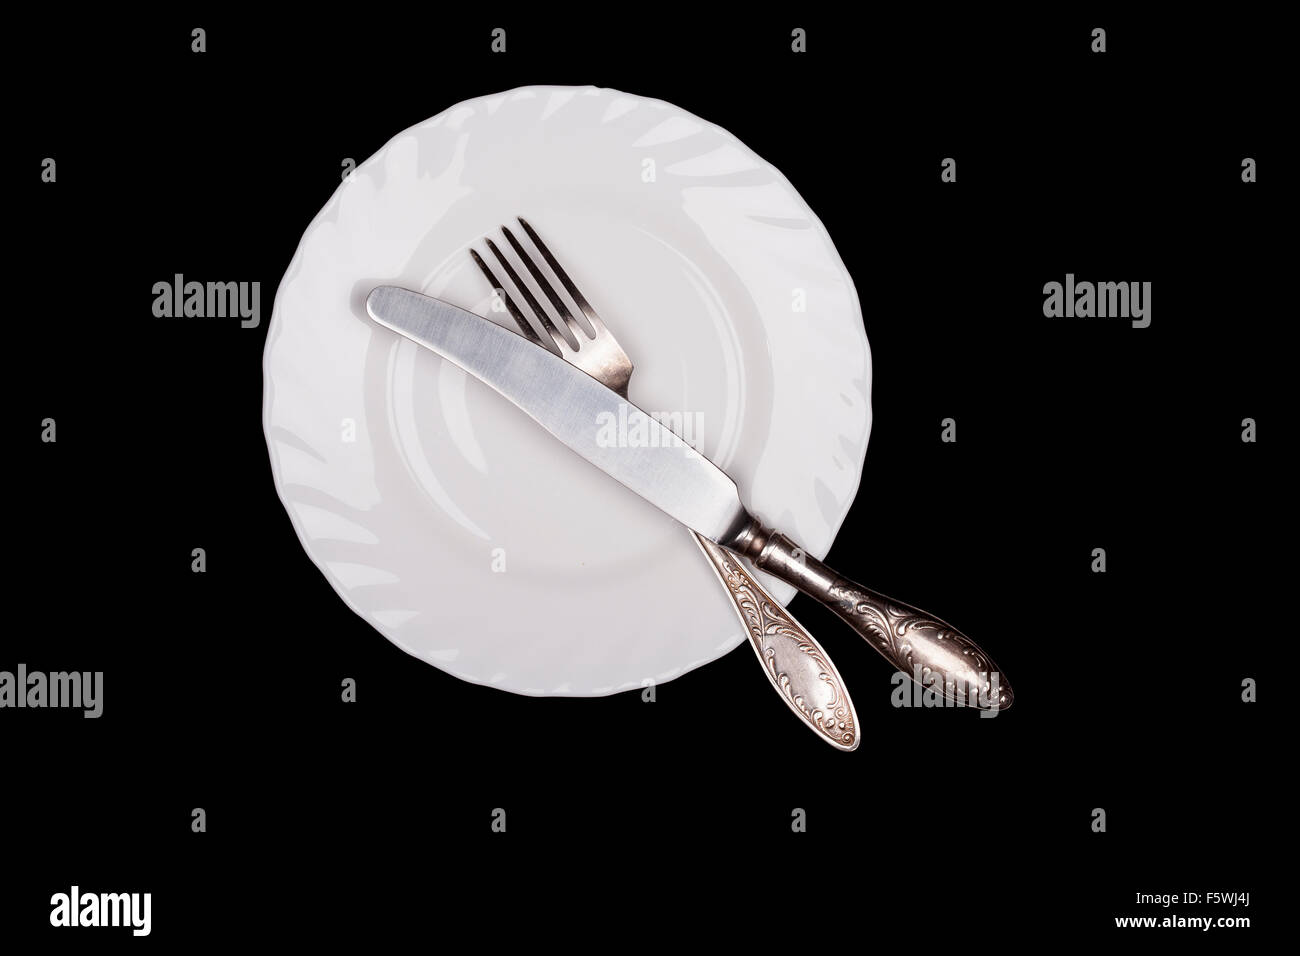 Signe de l'étiquette. Assiette, fourchette, couteau top view isolated on black Banque D'Images